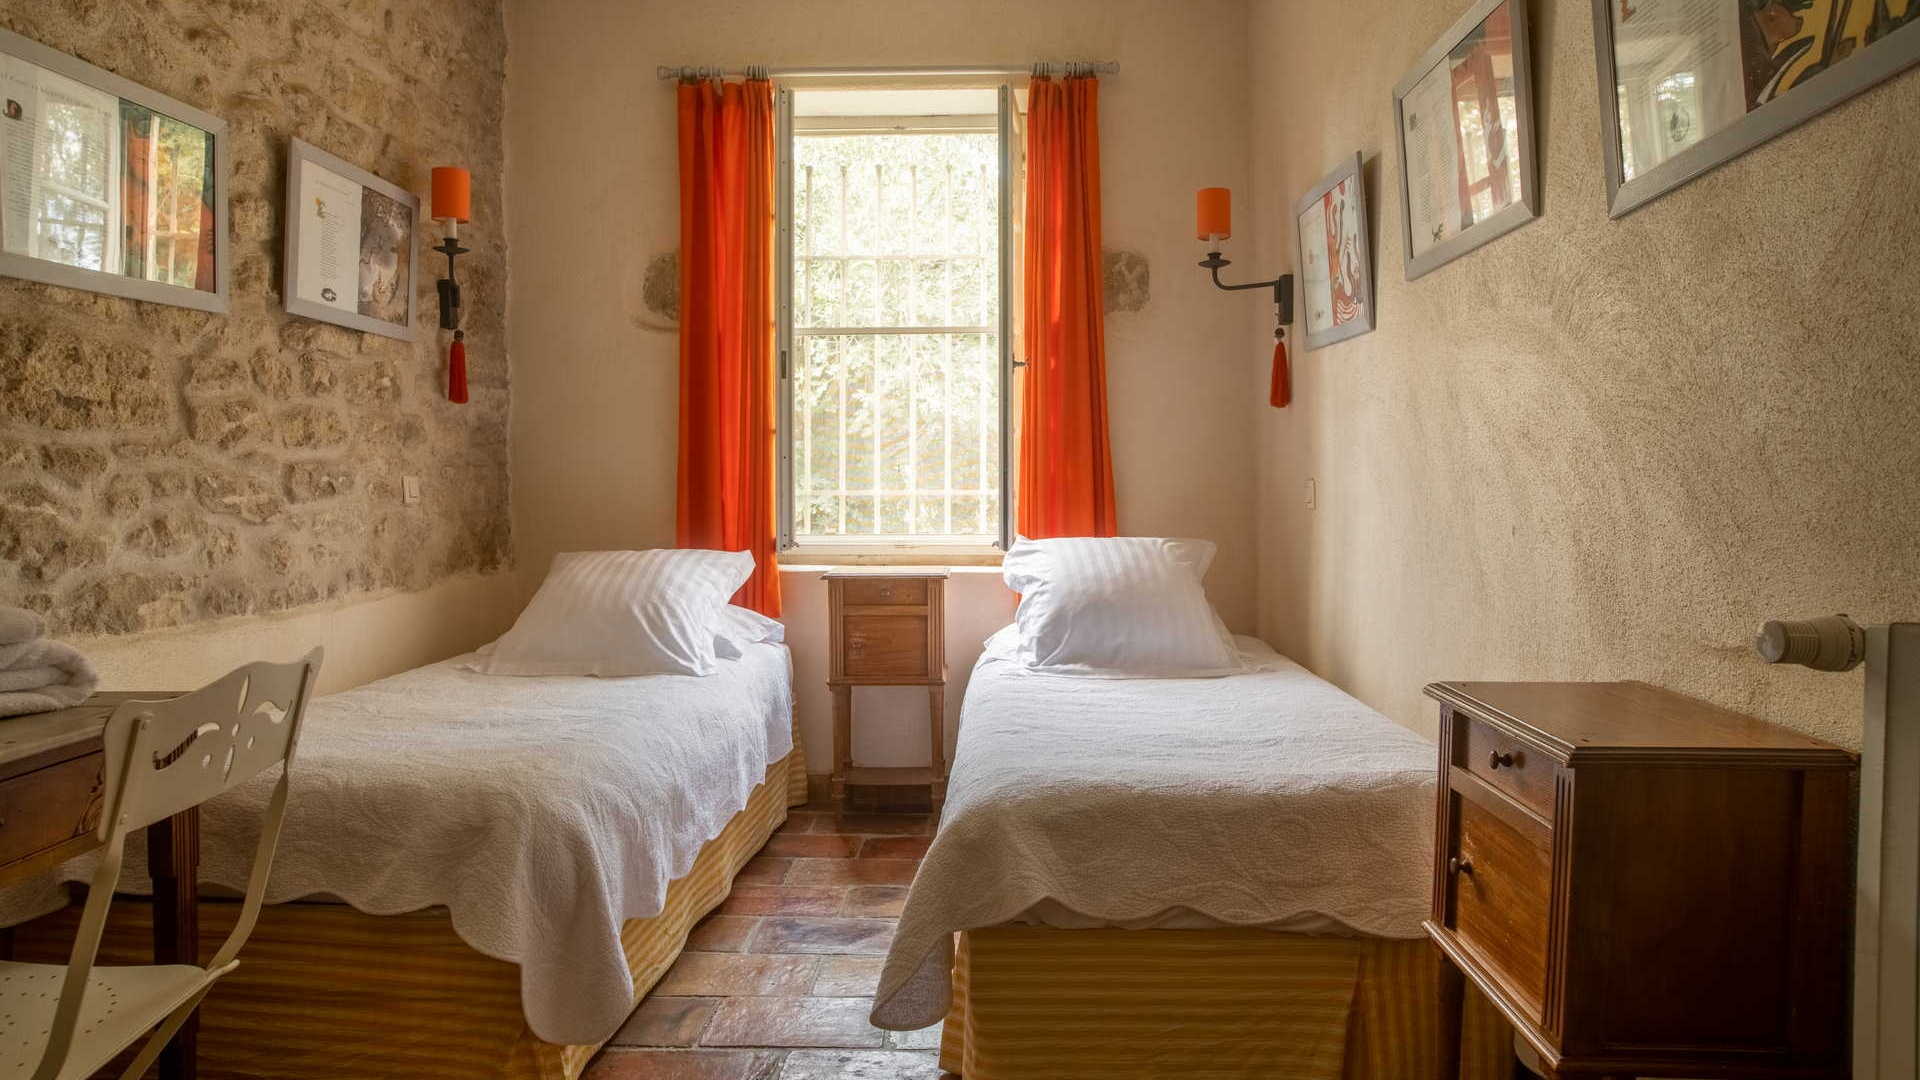 Chambres avec double lits simples - Le Provençal, vacances dans le gard - Domaine des Clos